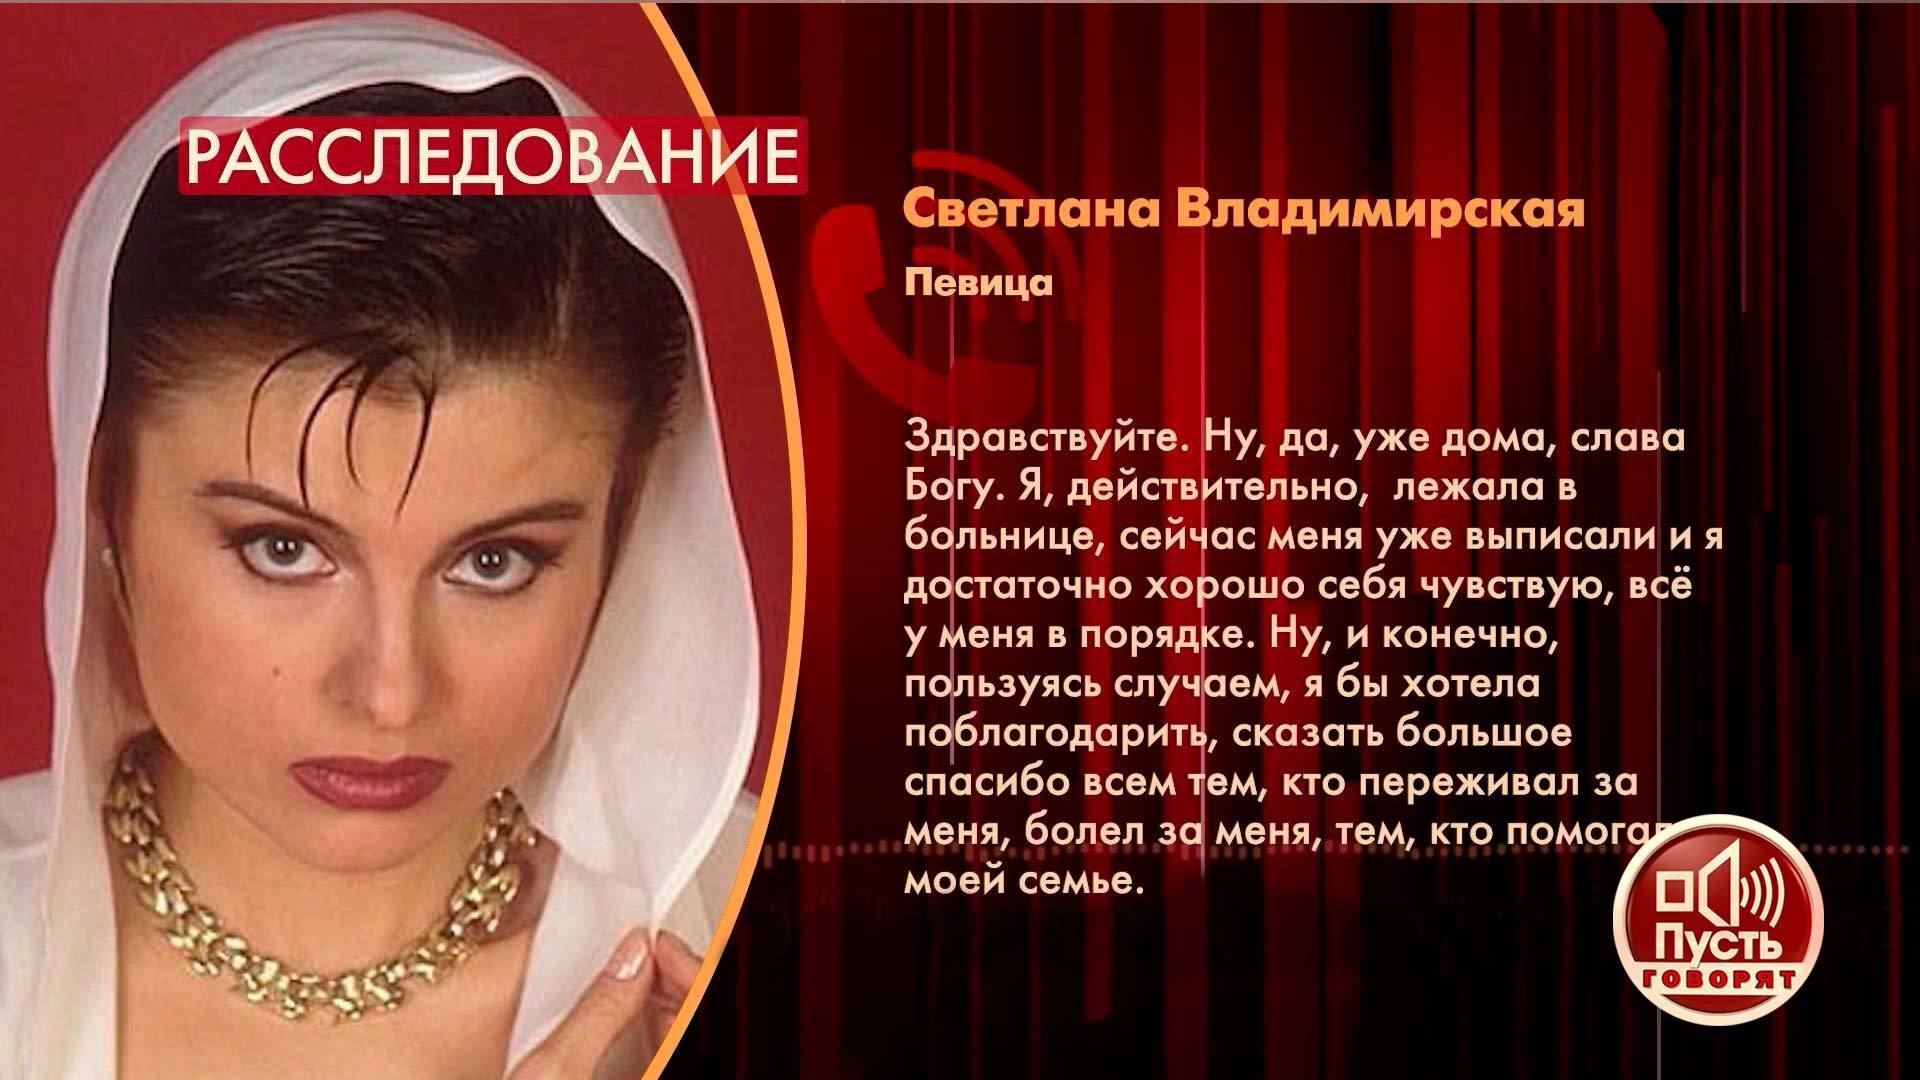 Светлана Владимирская сейчас певица 2022